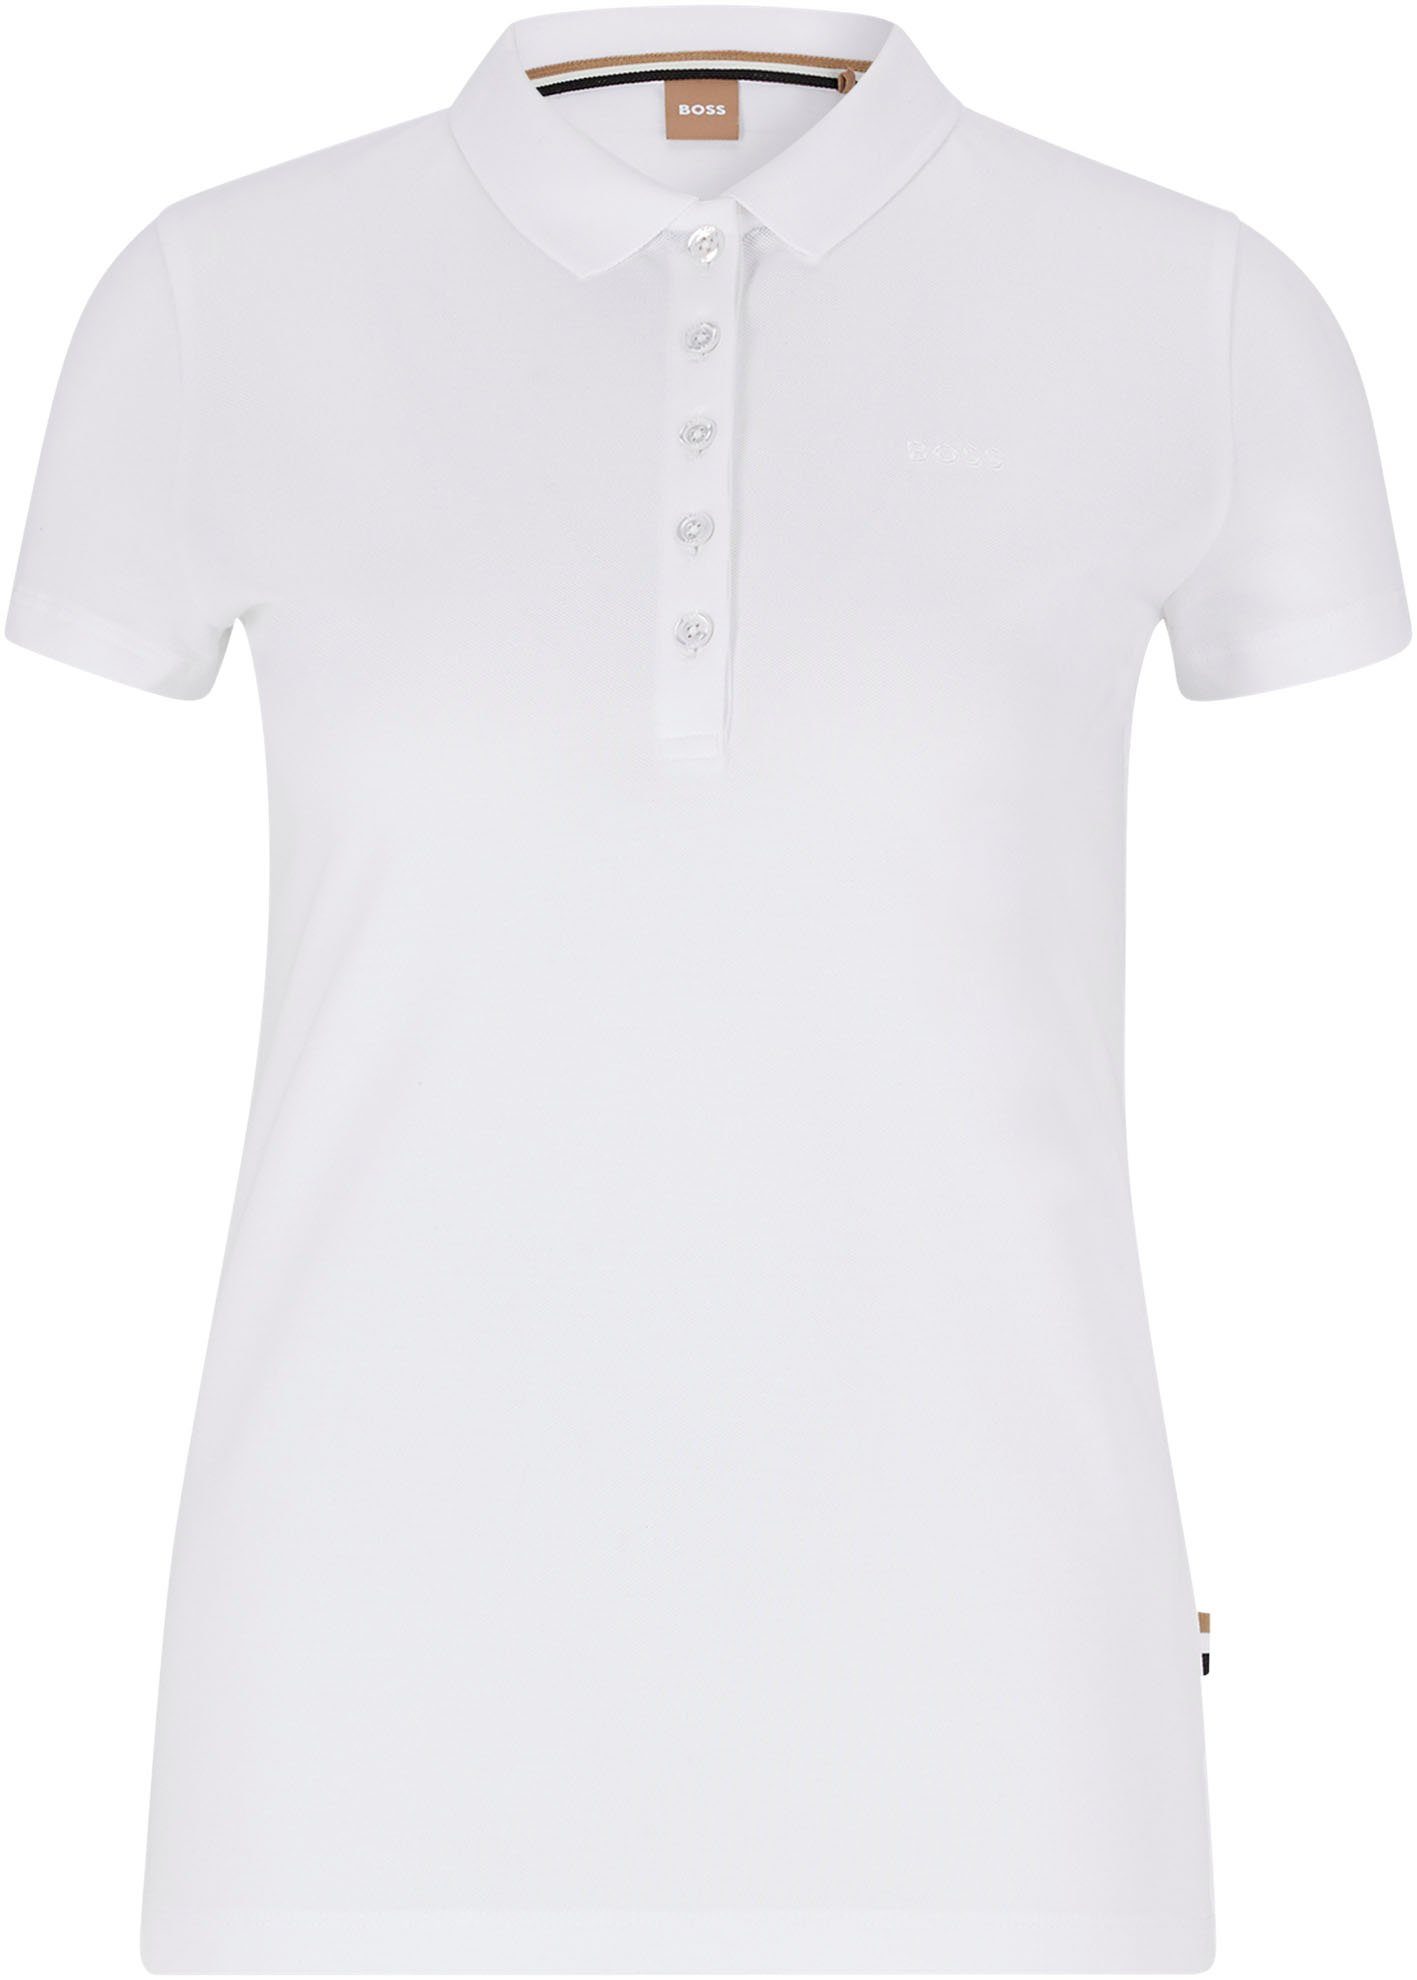 BOSS ORANGE Poloshirt C_Epola mit BOSS-Stickerei White